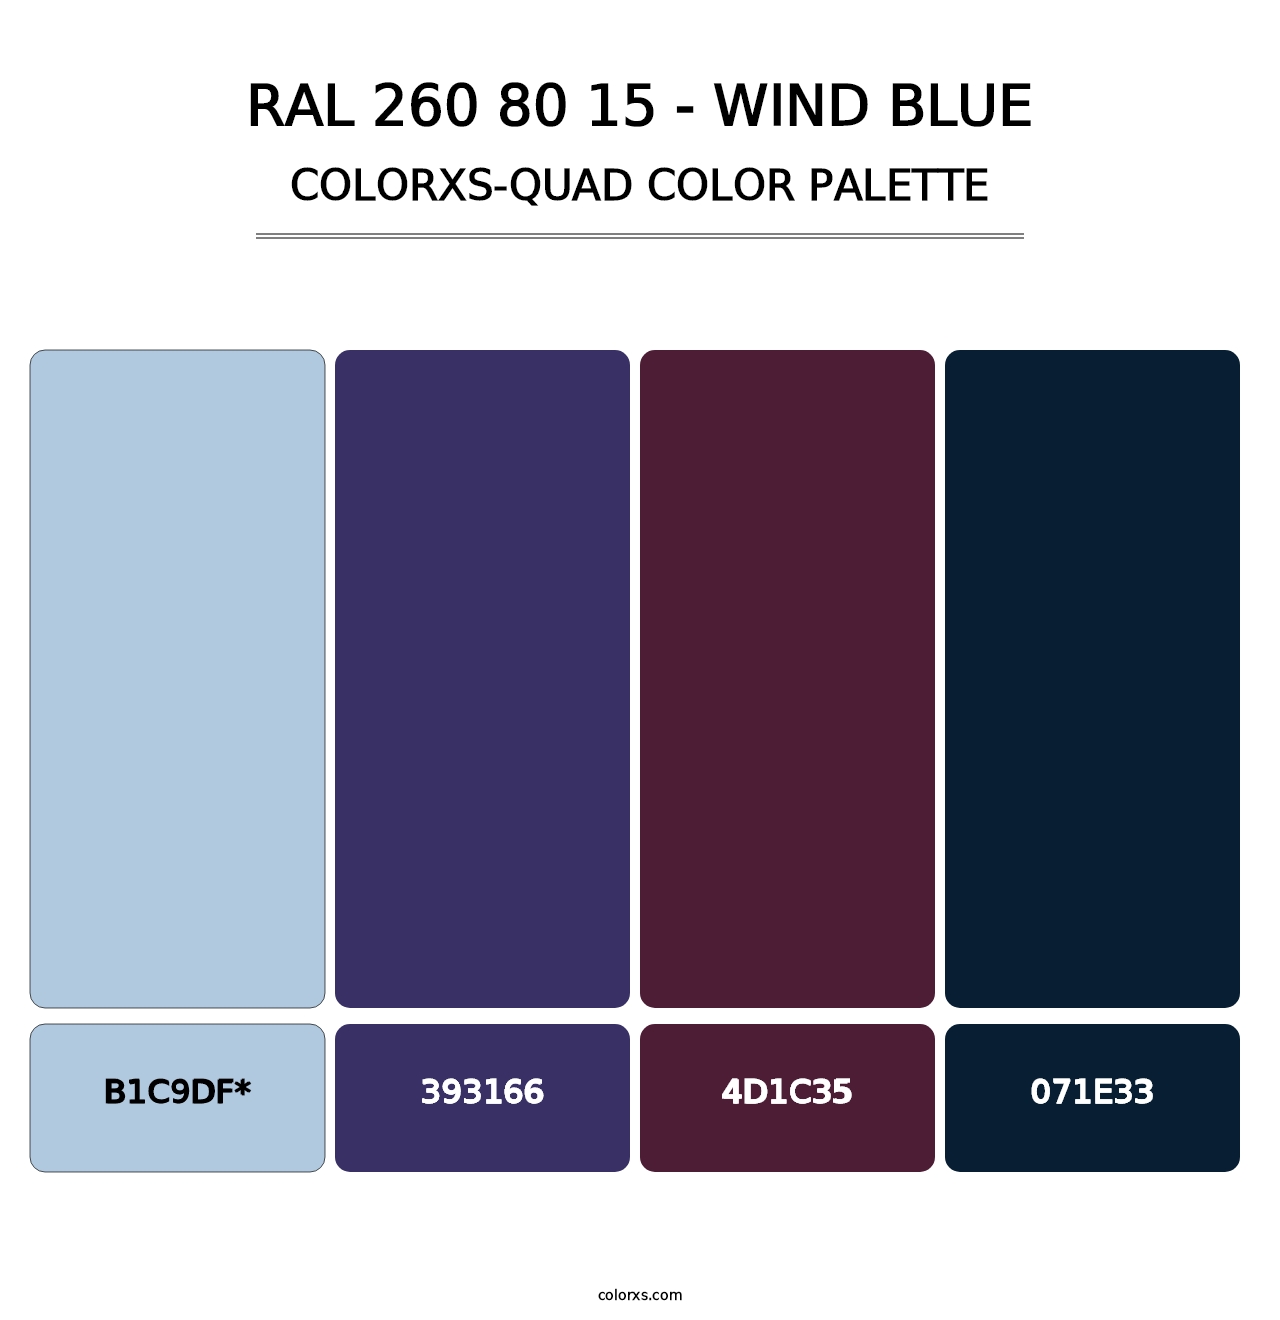 RAL 260 80 15 - Wind Blue - Colorxs Quad Palette